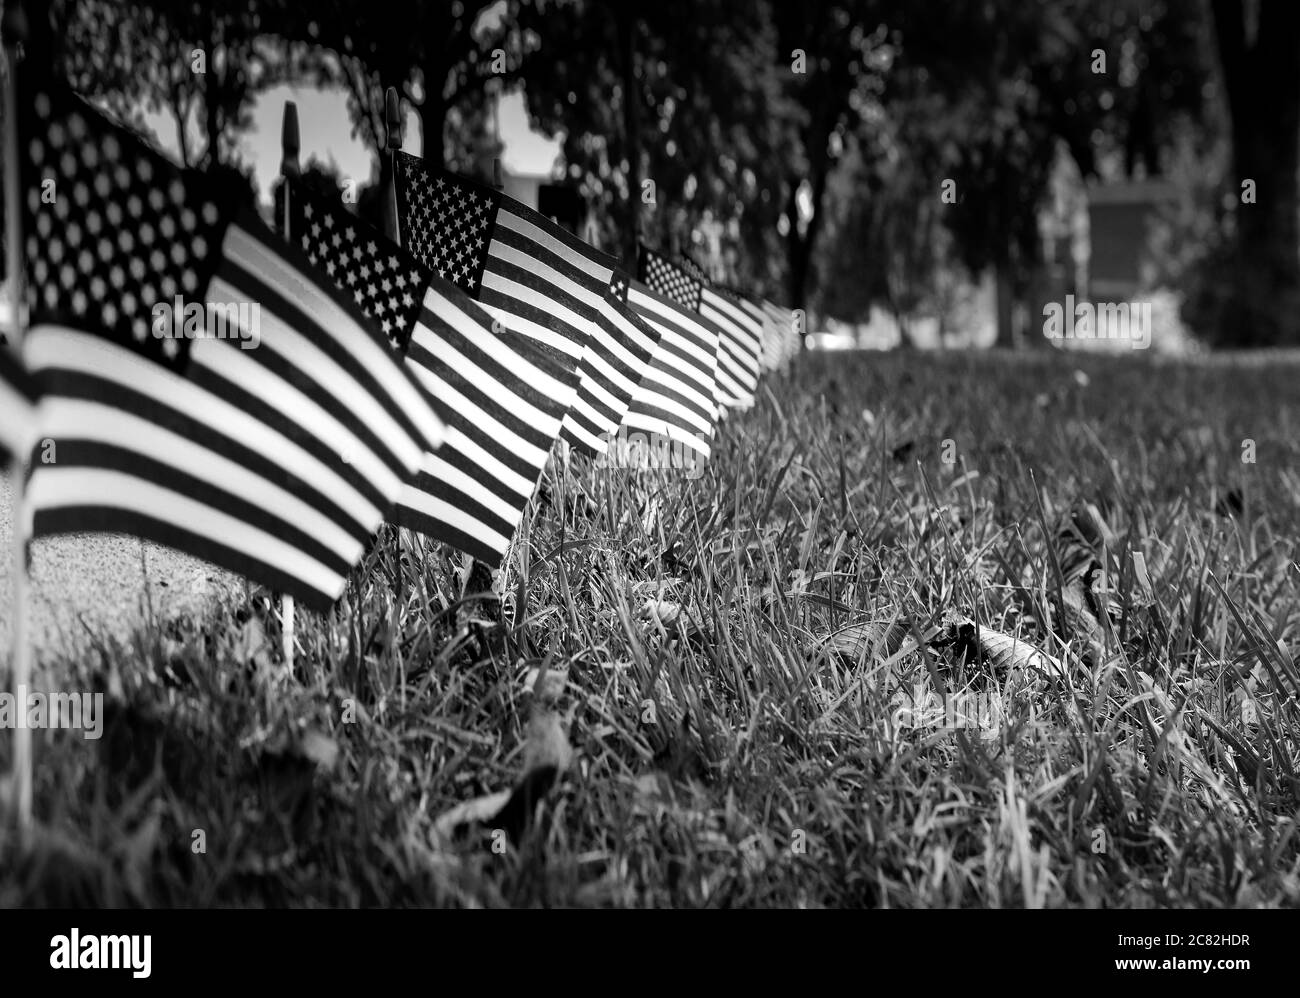 Una vista a fuoco selezionato, ad angolo basso di una visualizzazione a bordo strada di bandiere americane in miniatura in erba, in un display patriottico negli Stati Uniti, in bianco e nero Foto Stock